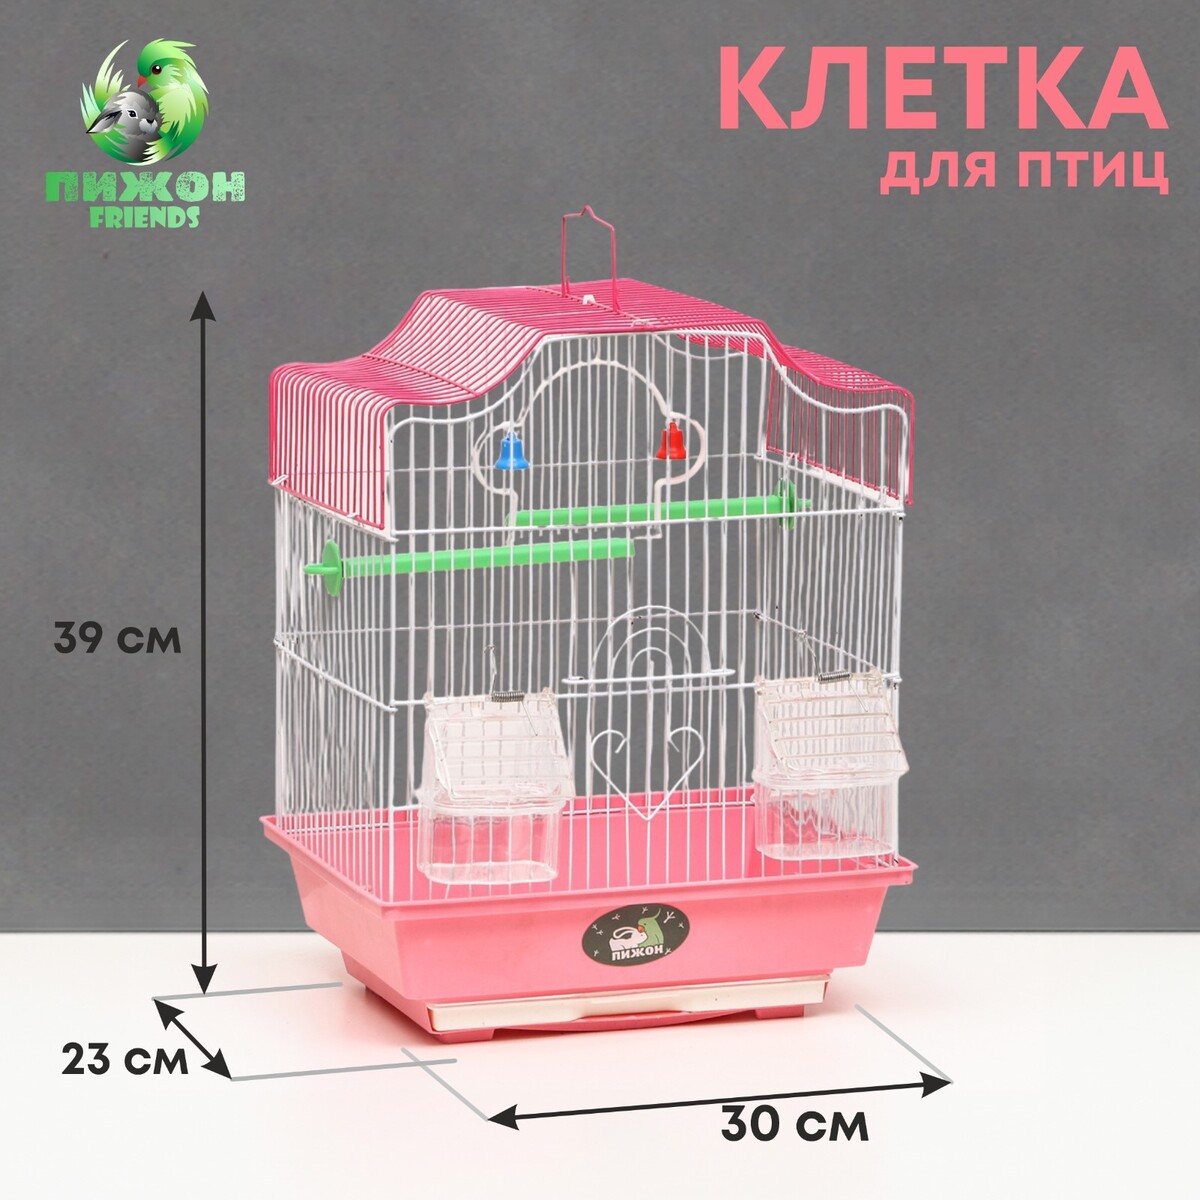 Клетка для птиц укомплектованная bd-1/4f, 30 х 23 х 39 см, розовая клетка для птиц овальная с кормушками 30 х 23 х 39 см синяя